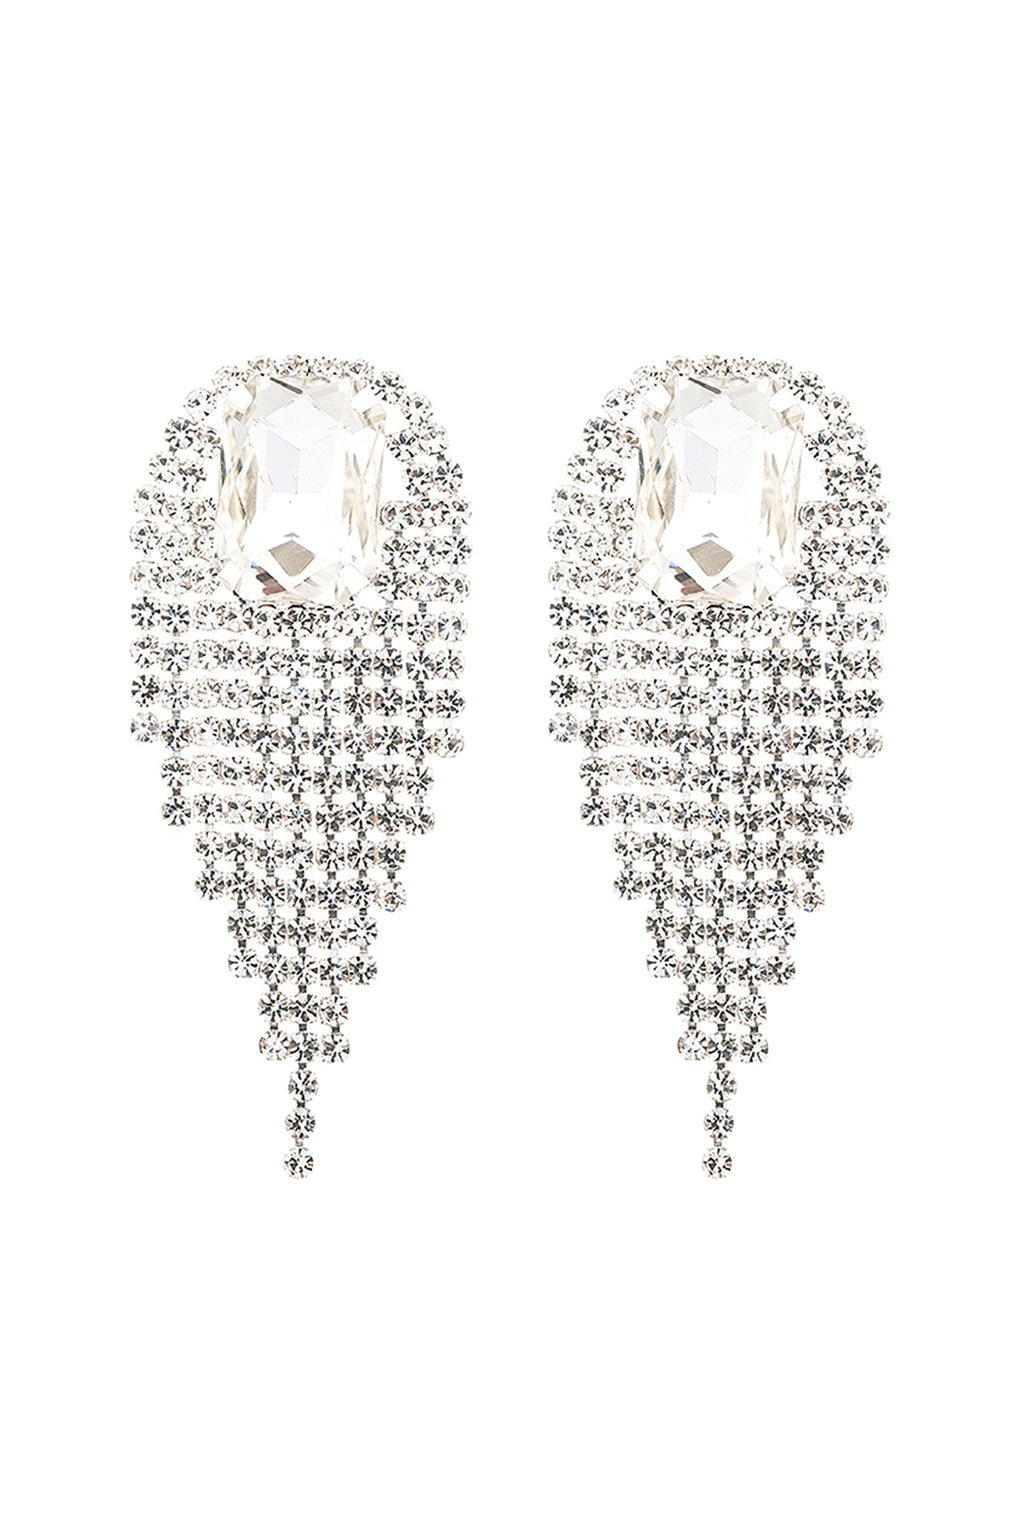 Rhinestone Square Fringe Tassel Earrings Crystal Silver - Pack of 6